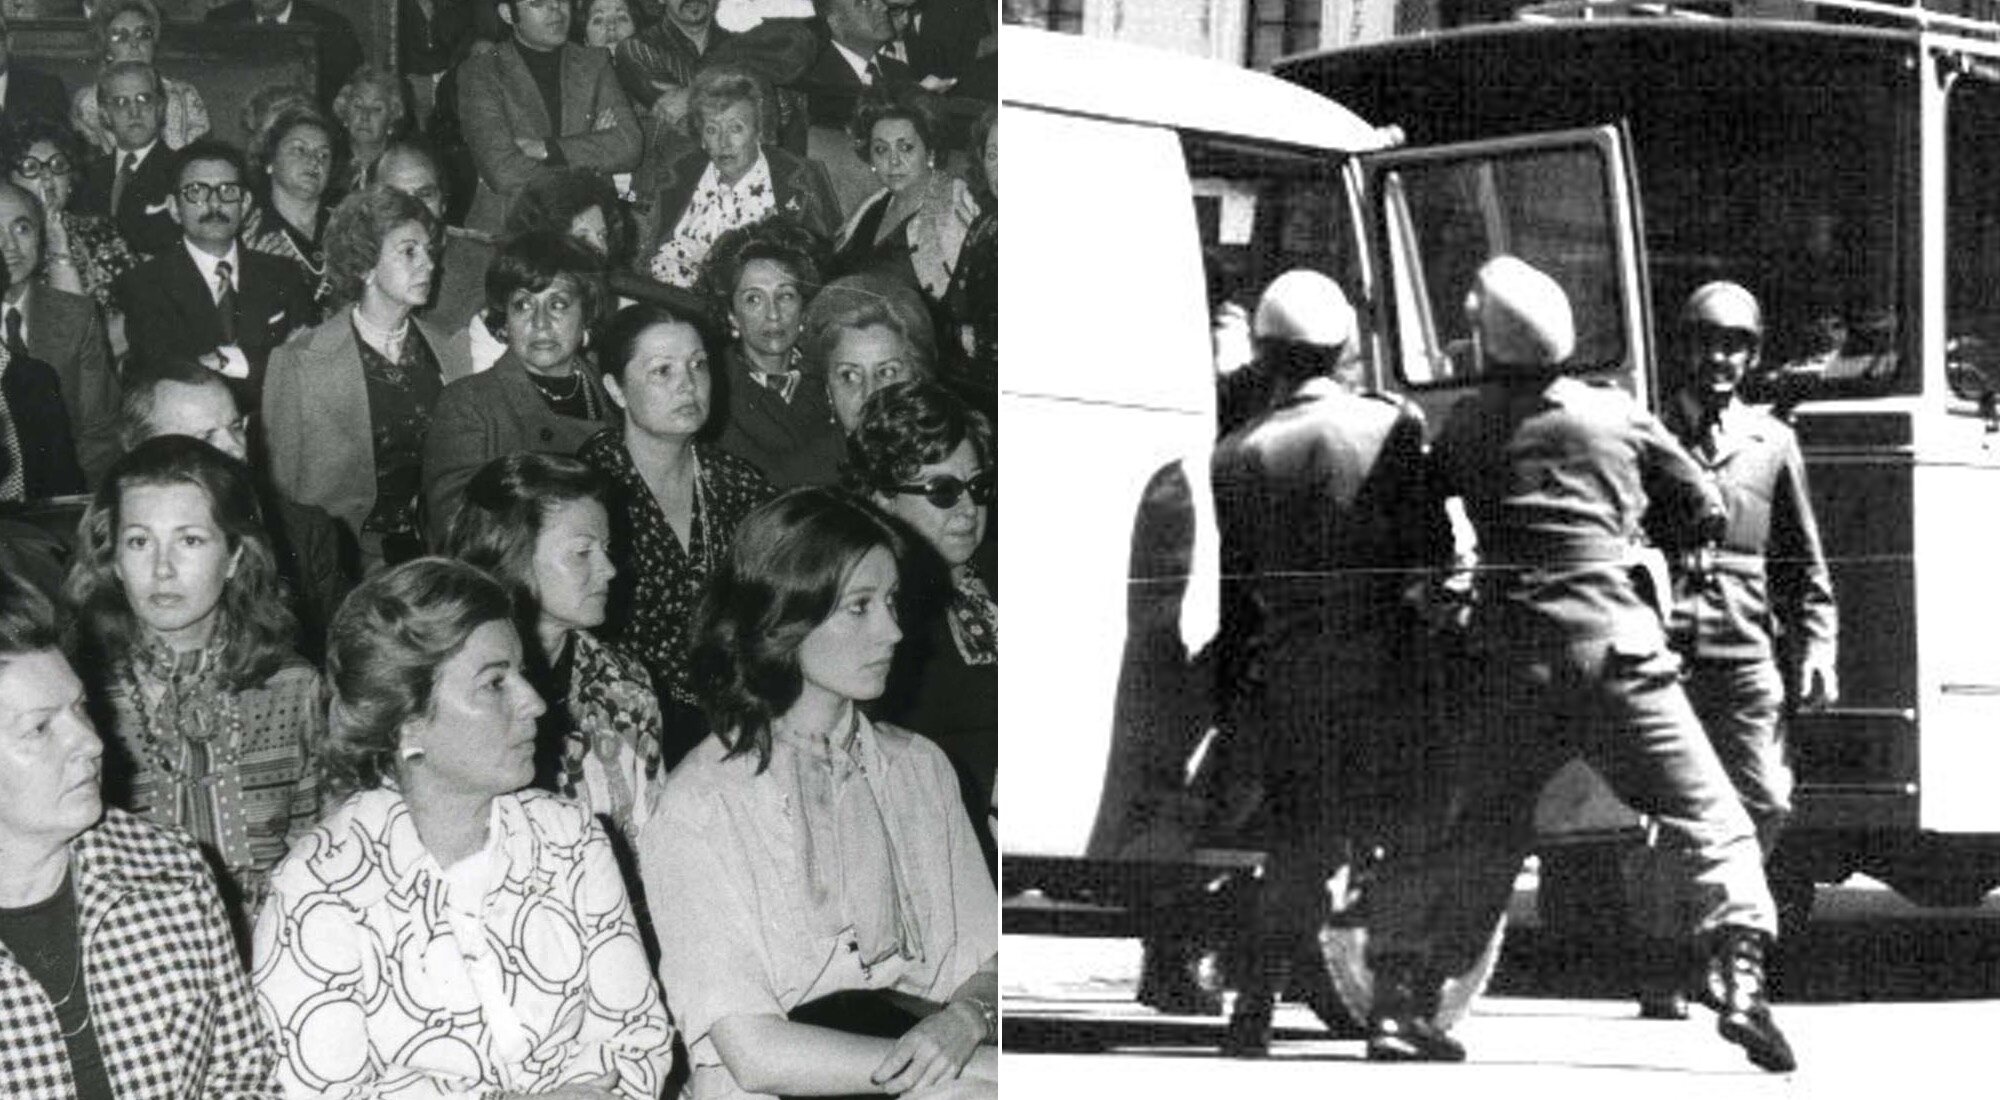 20ª Semana Internacional de Cine de Valladolid (1975) y cargas policiales del Régimen